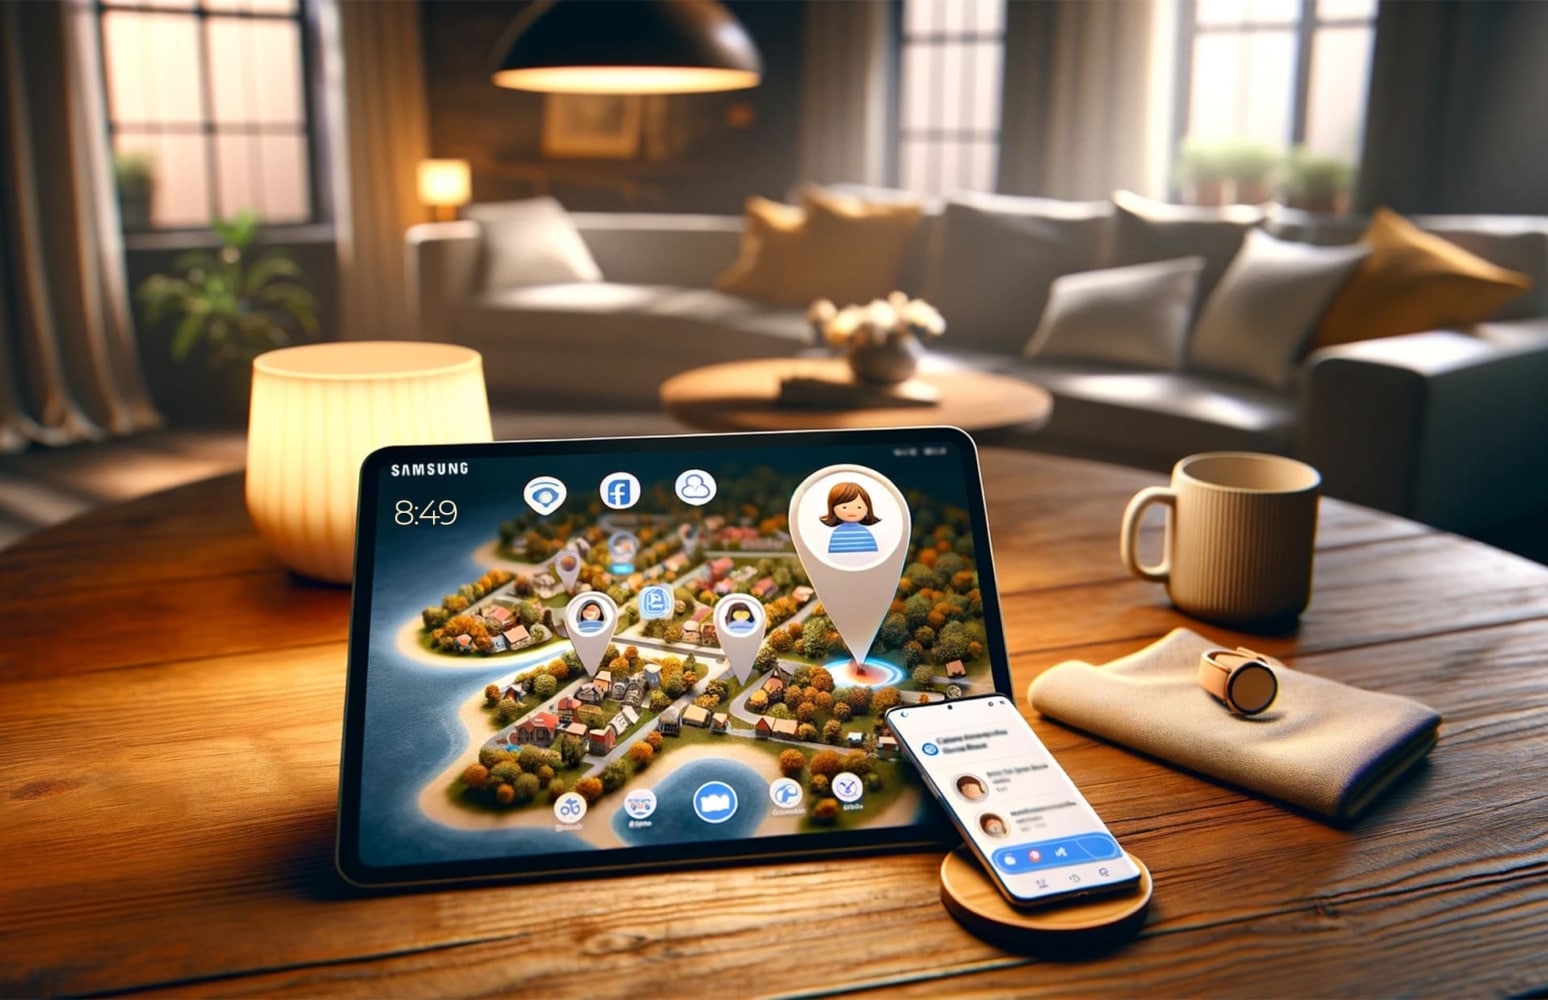 En la habitación, una tableta Samsung con un mapa abierto que muestra el terreno con árboles y casas y marcas de geolocalización está sobre una mesa, con un teléfono encendido a su lado